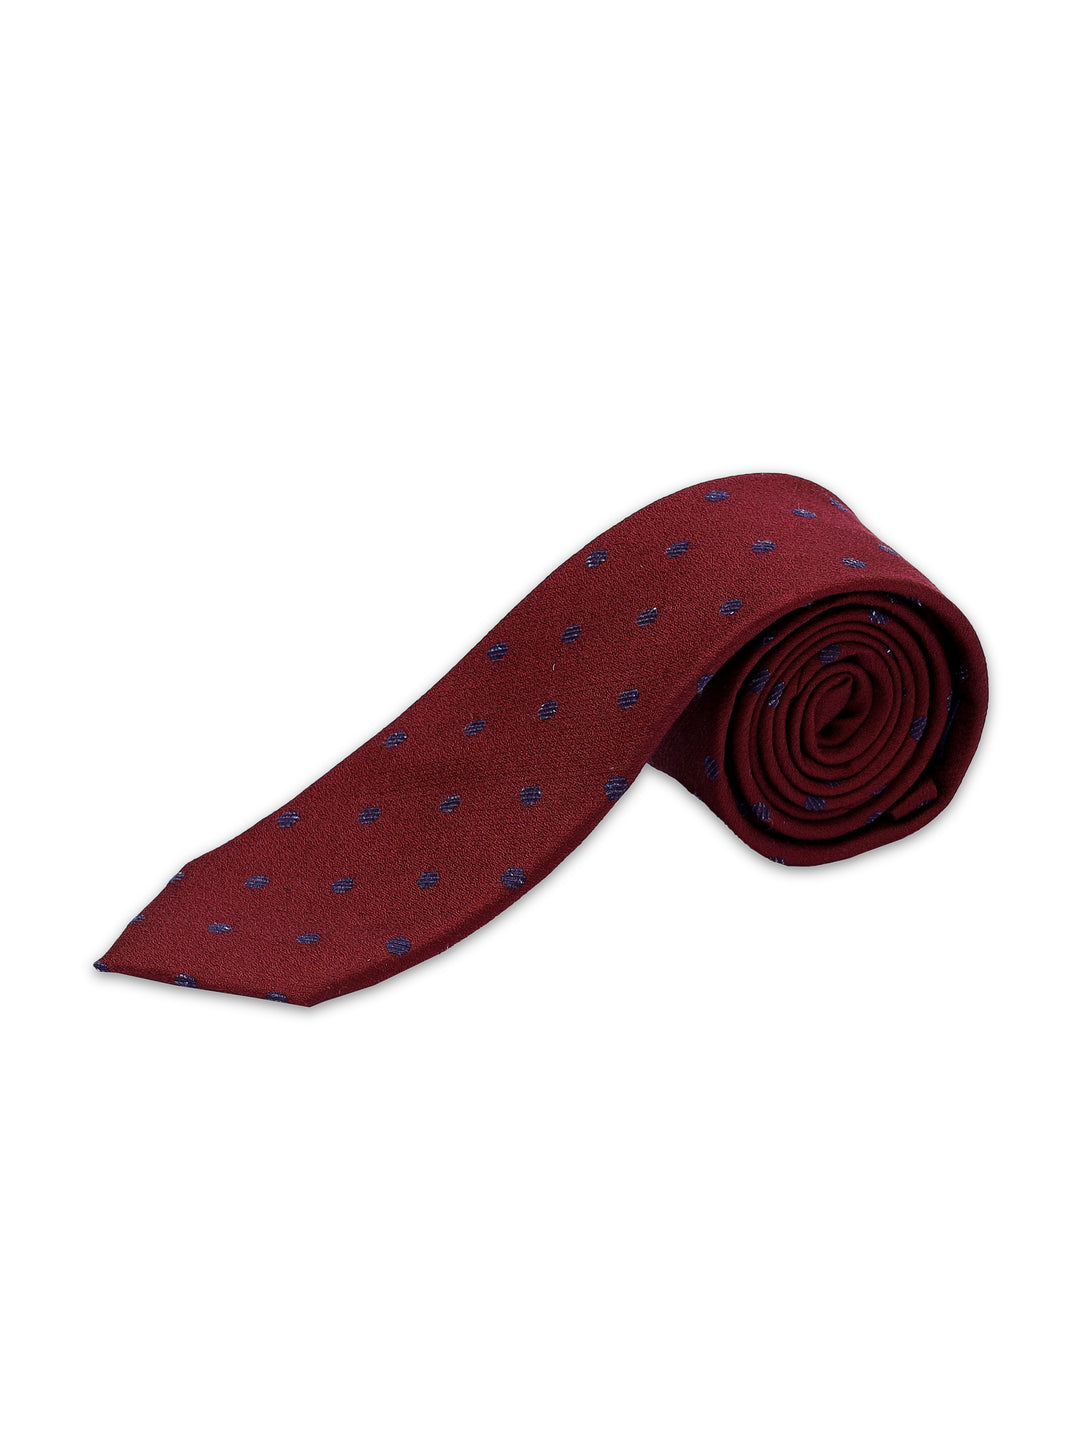 TM Lewin Mens (80%Silk 20% Wool) Dotted Tie 64597